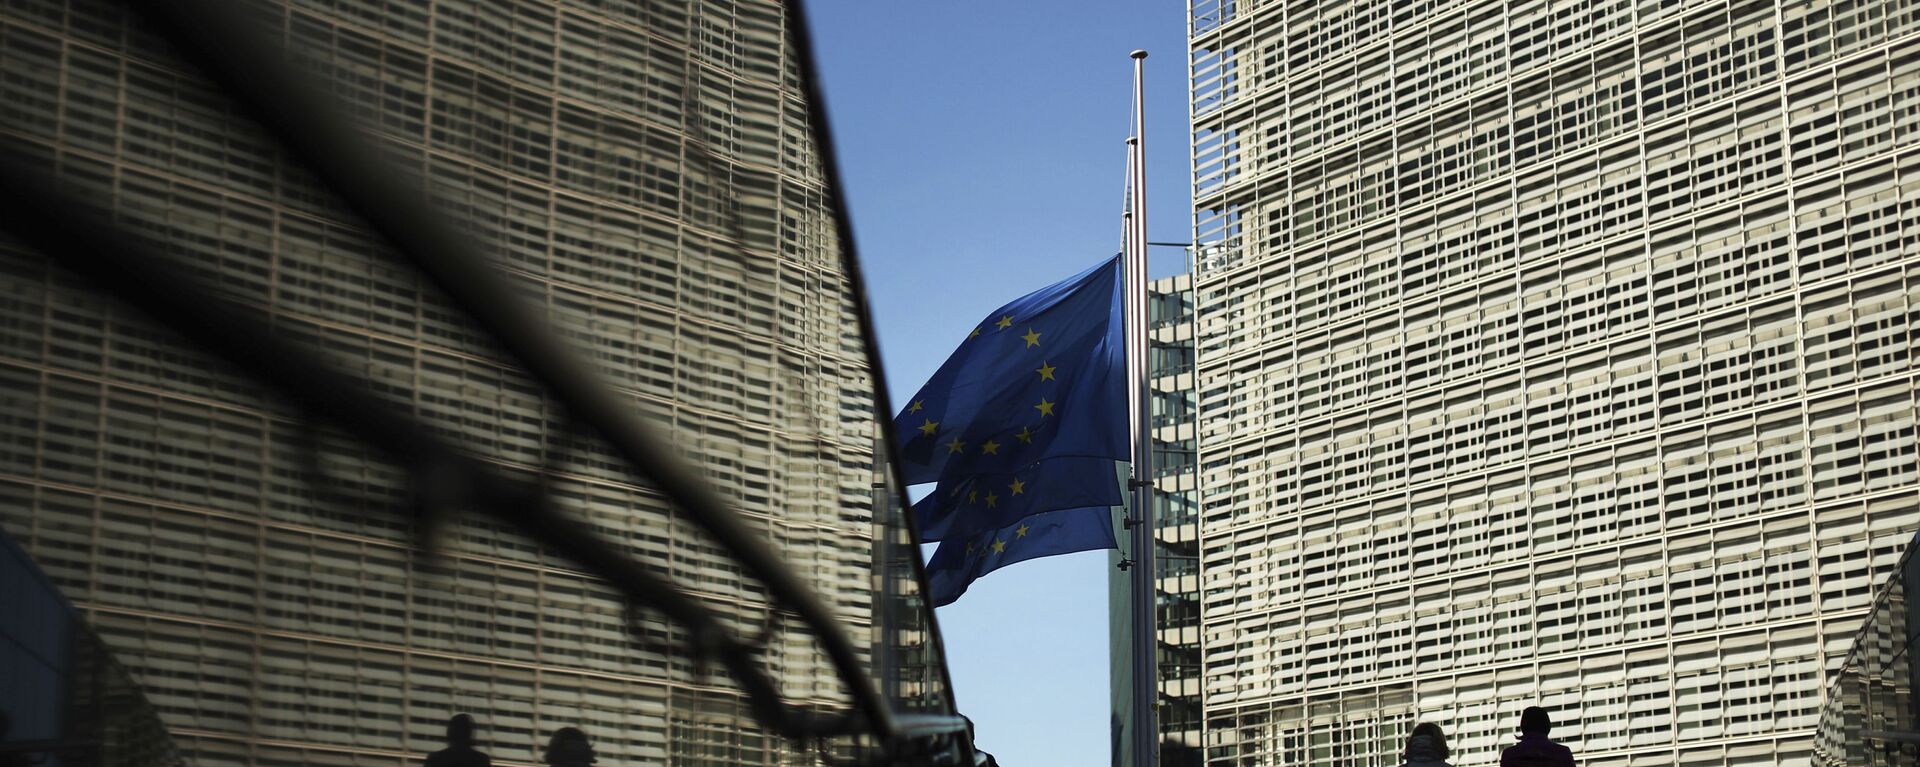 Флаги Евросоюза рядом с штаб-квартирой Европейской комиссии в Брюсселе - Sputnik Таджикистан, 1920, 25.01.2021